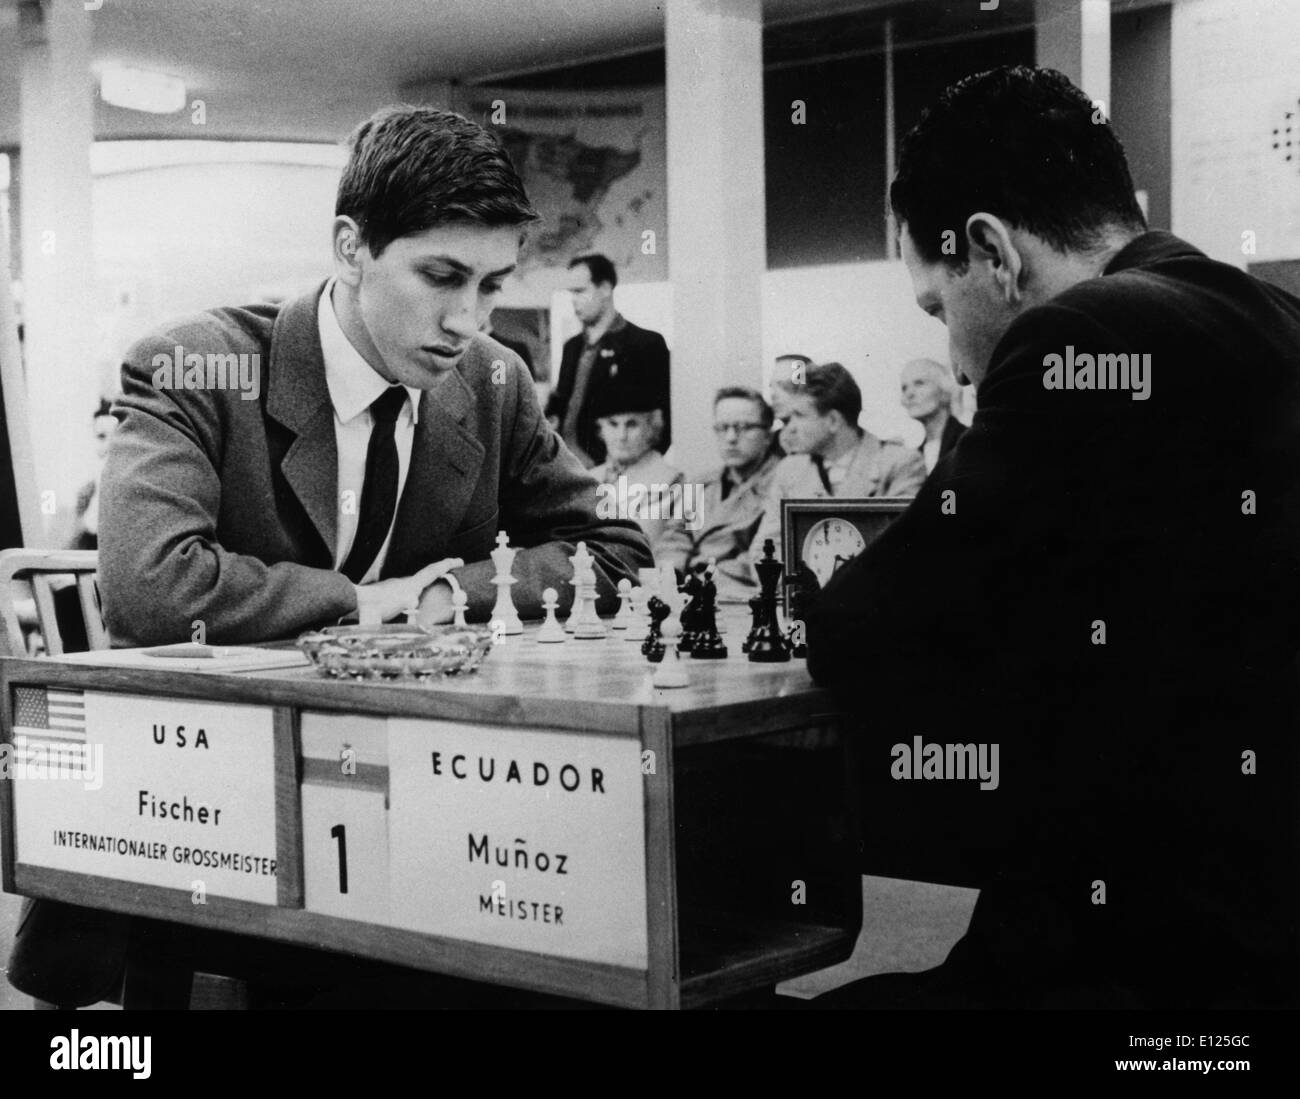 Jul 16, 2004; Leipzig, Germania orientale (File foto 10/20/1960) l'ex campione del mondo di scacchi Bobby Fischer degli Stati Uniti, arrestato in Giappone e ha voluto che nel suo paese di origine a partire dal 1992 per la rottura di un embargo internazionale sulla ex Jugoslavia è ampiamente considerato uno degli sport più brillanti menti di tutti i tempi. Nel 1972, a Helsinki, il genio americano ha rotto il 24 anni di dominio sovietico sconfiggendo Boris Spassky, e ha portato a casa un campionato del mondo. Nella foto: Bobby Fischer, gioca contro Munoz dell Ecuador ai Giochi Olimpici di scacchi. (Credito Immagine: KEYSTONE Pictures USA/ZUMAPRESS Foto Stock